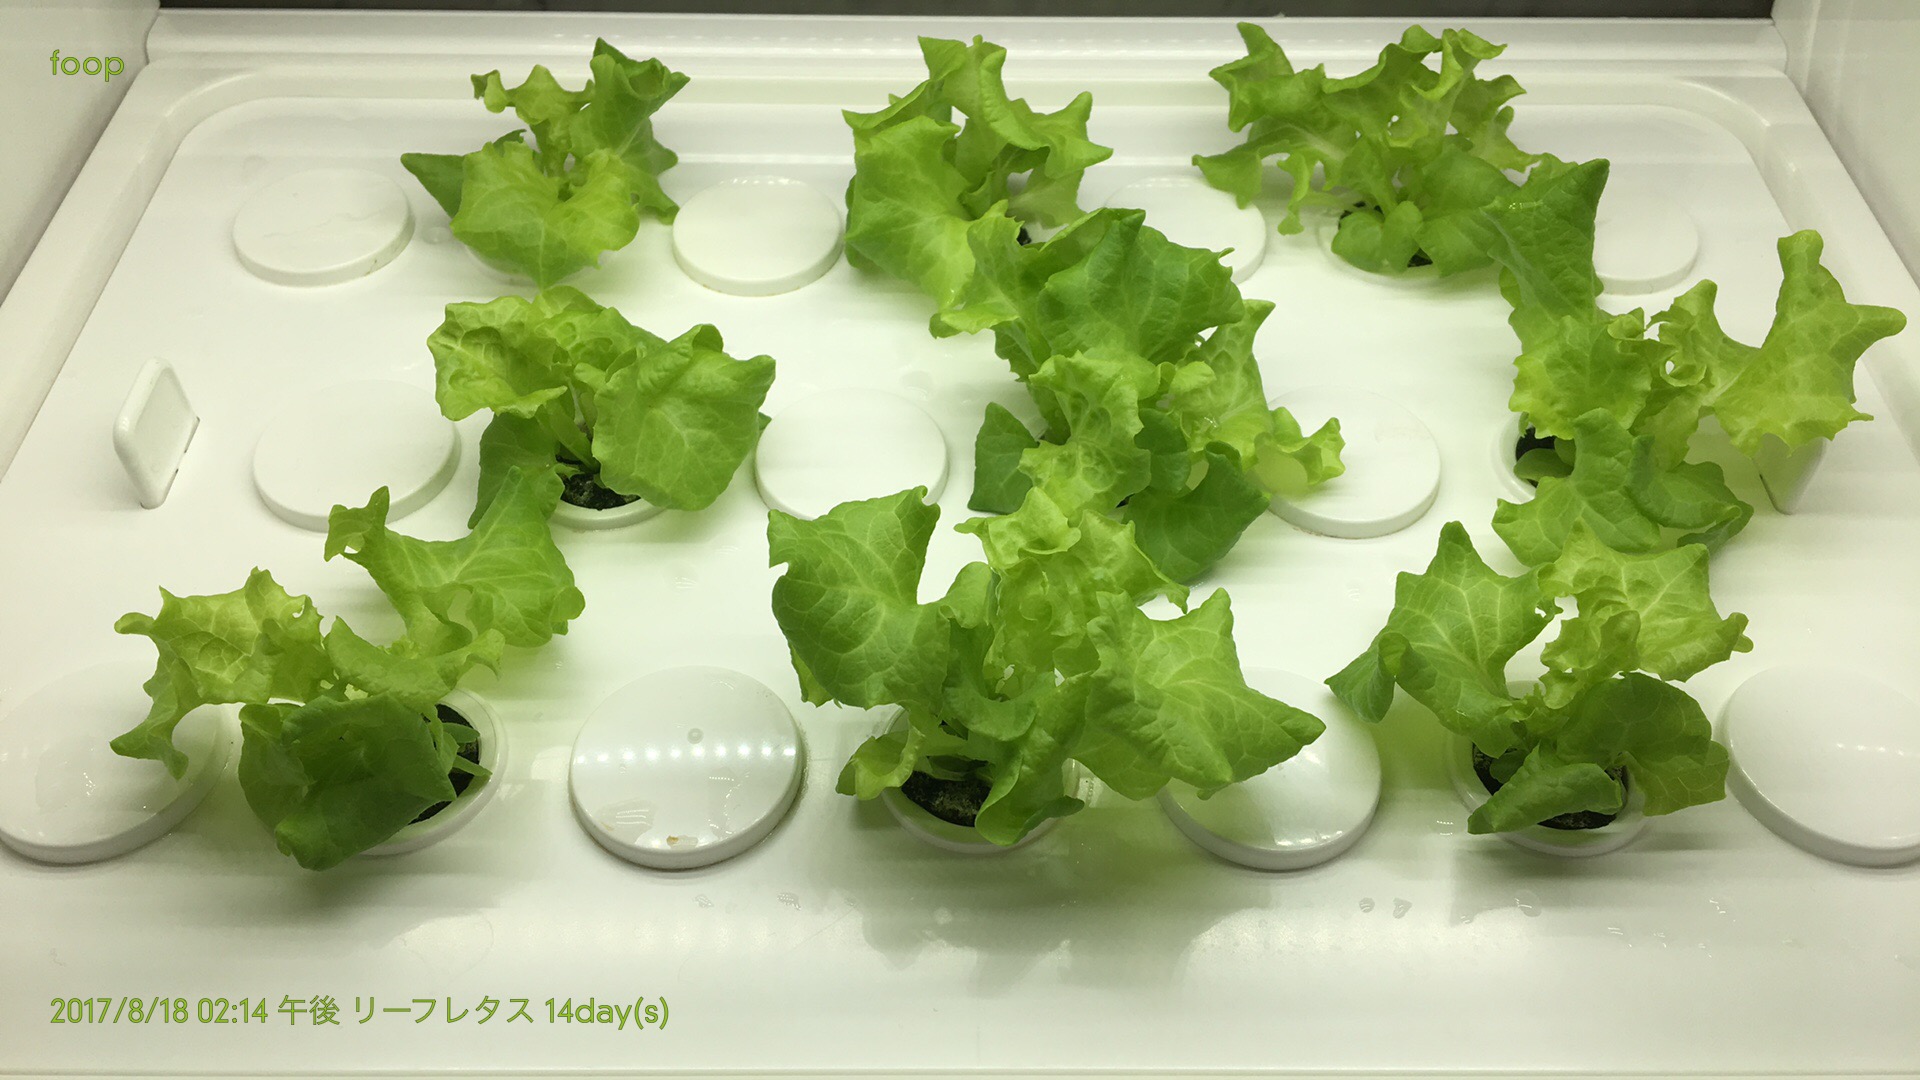 foop,水耕栽培,leaf lettuce,リーフレタス,ブログ,間引き,14日目